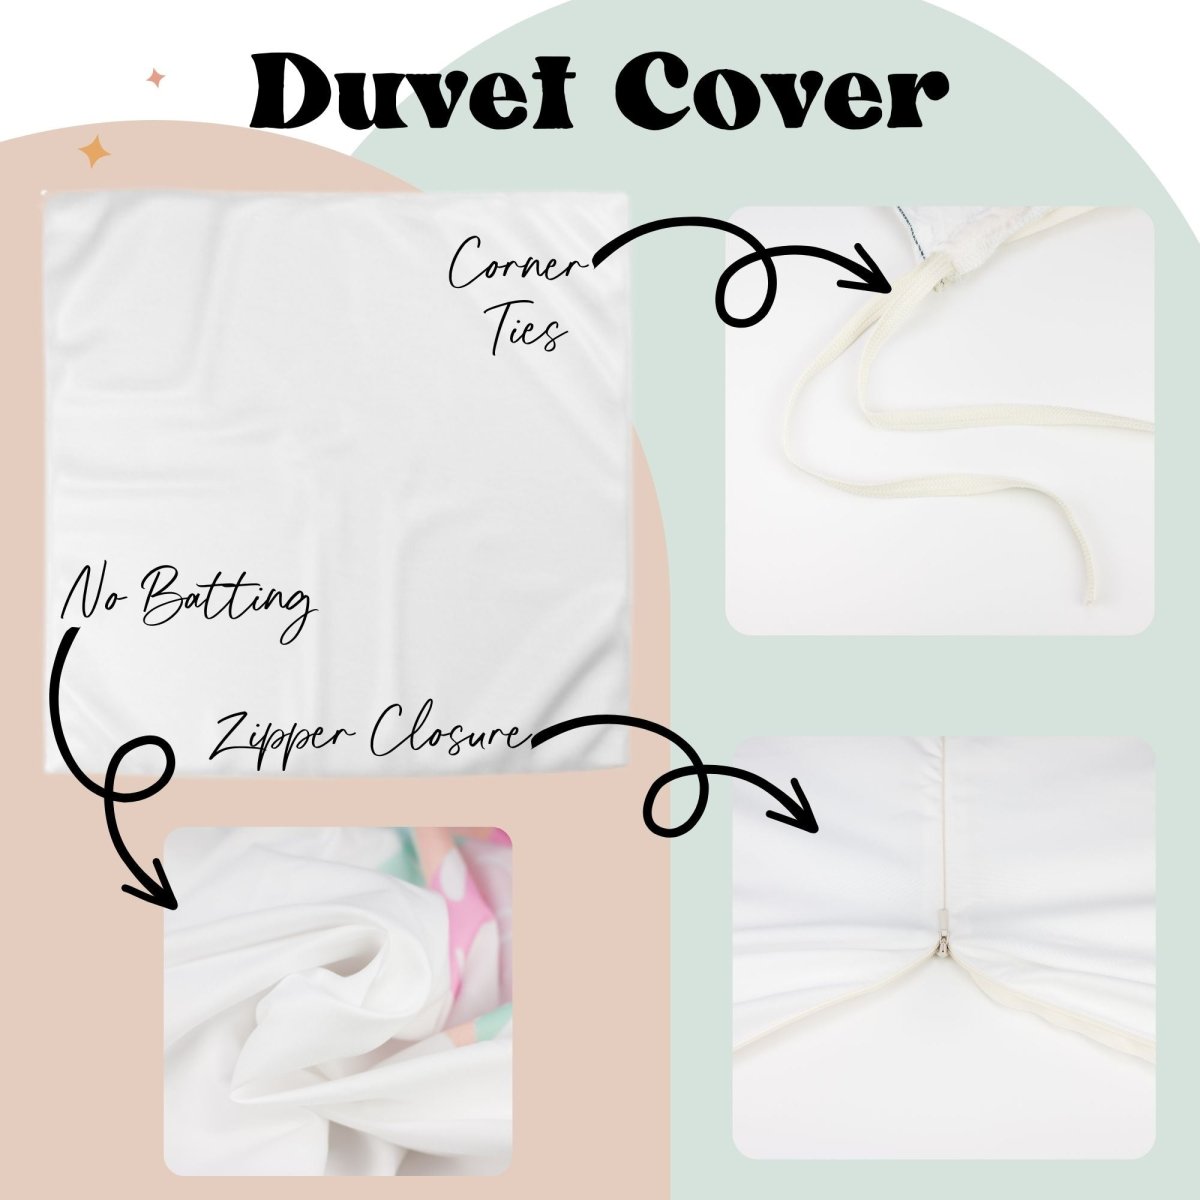 Sweet Sea Turtles Personalized Kids Bedding Set (Comforter or Duvet Cover) - gender_boy, gender_girl, gender_neutral